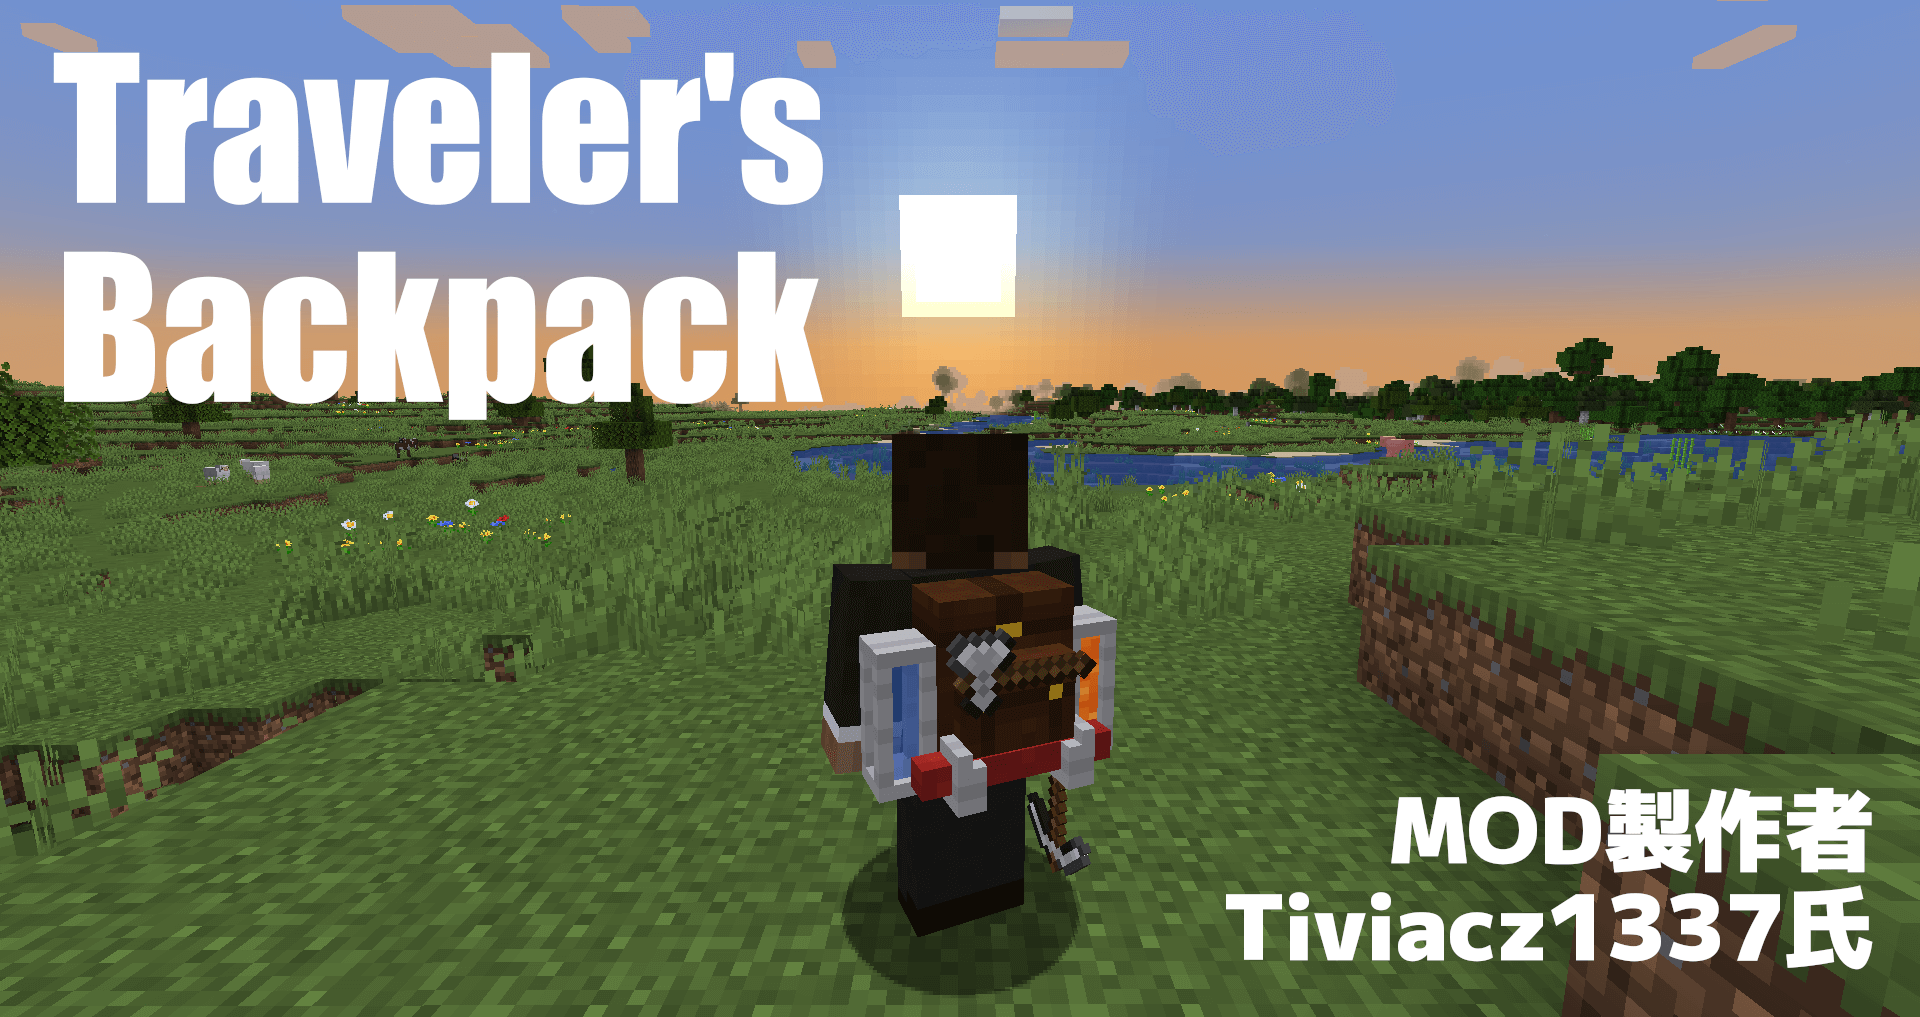 【マイクラ】さあ出かけよう 1スタックのパン 鉄の剣 たいまつ バックパックに詰め込んで「Traveler's Backpack」【MOD紹介】